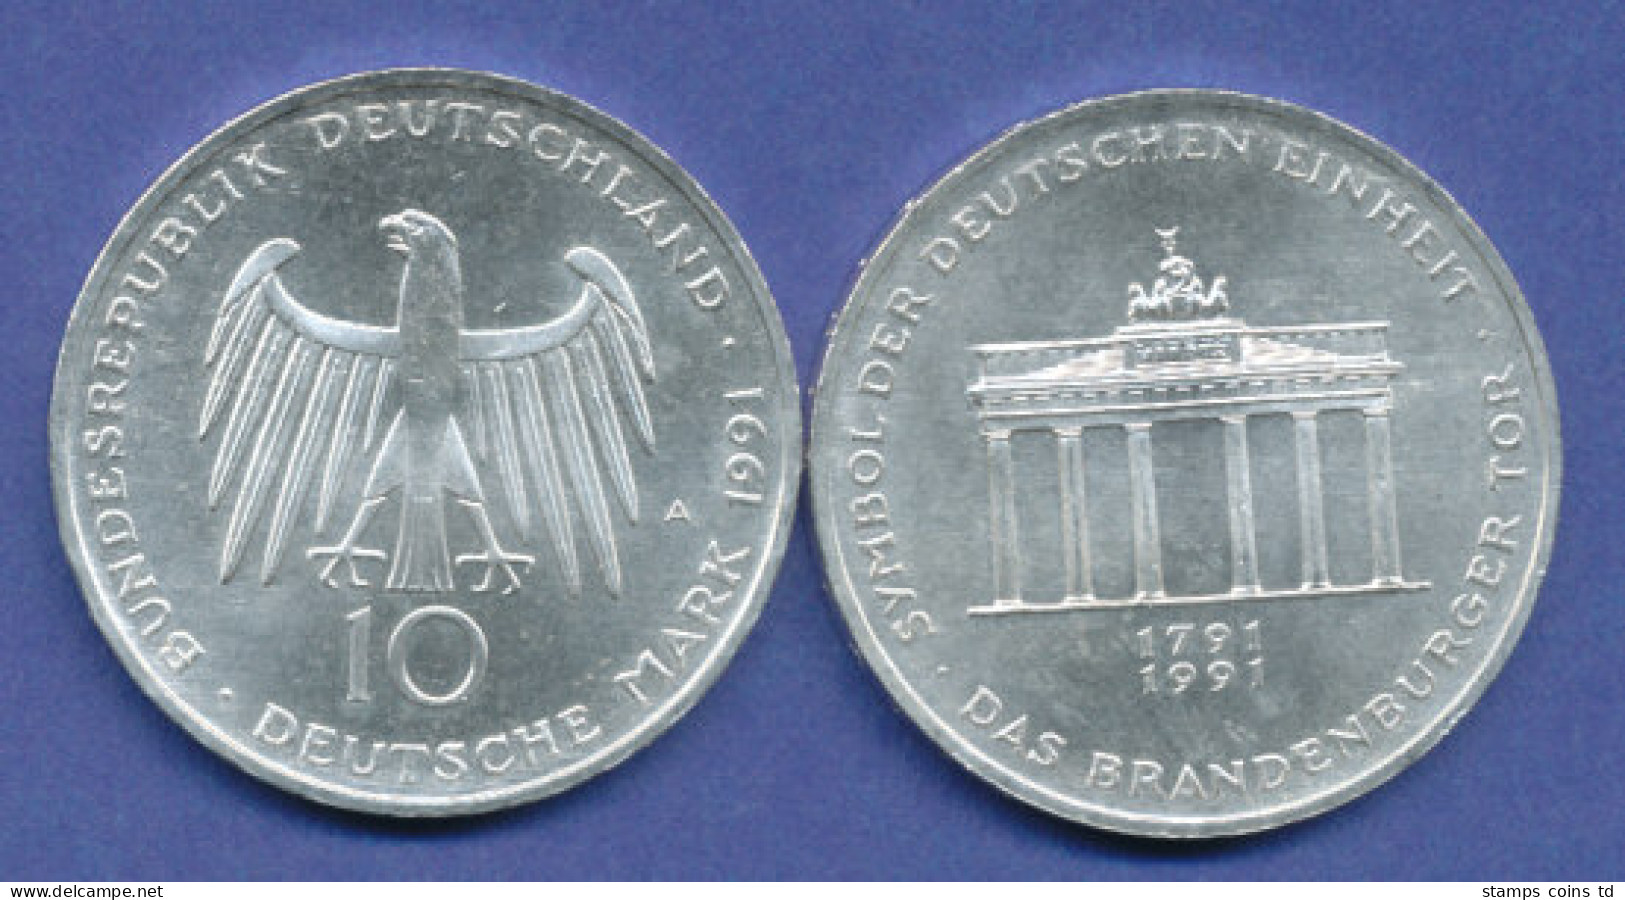 Bundesrepublik 10DM Silber-Gedenkmünze 1991, 200 Jahre Brandenburger Tor - 10 Marcos